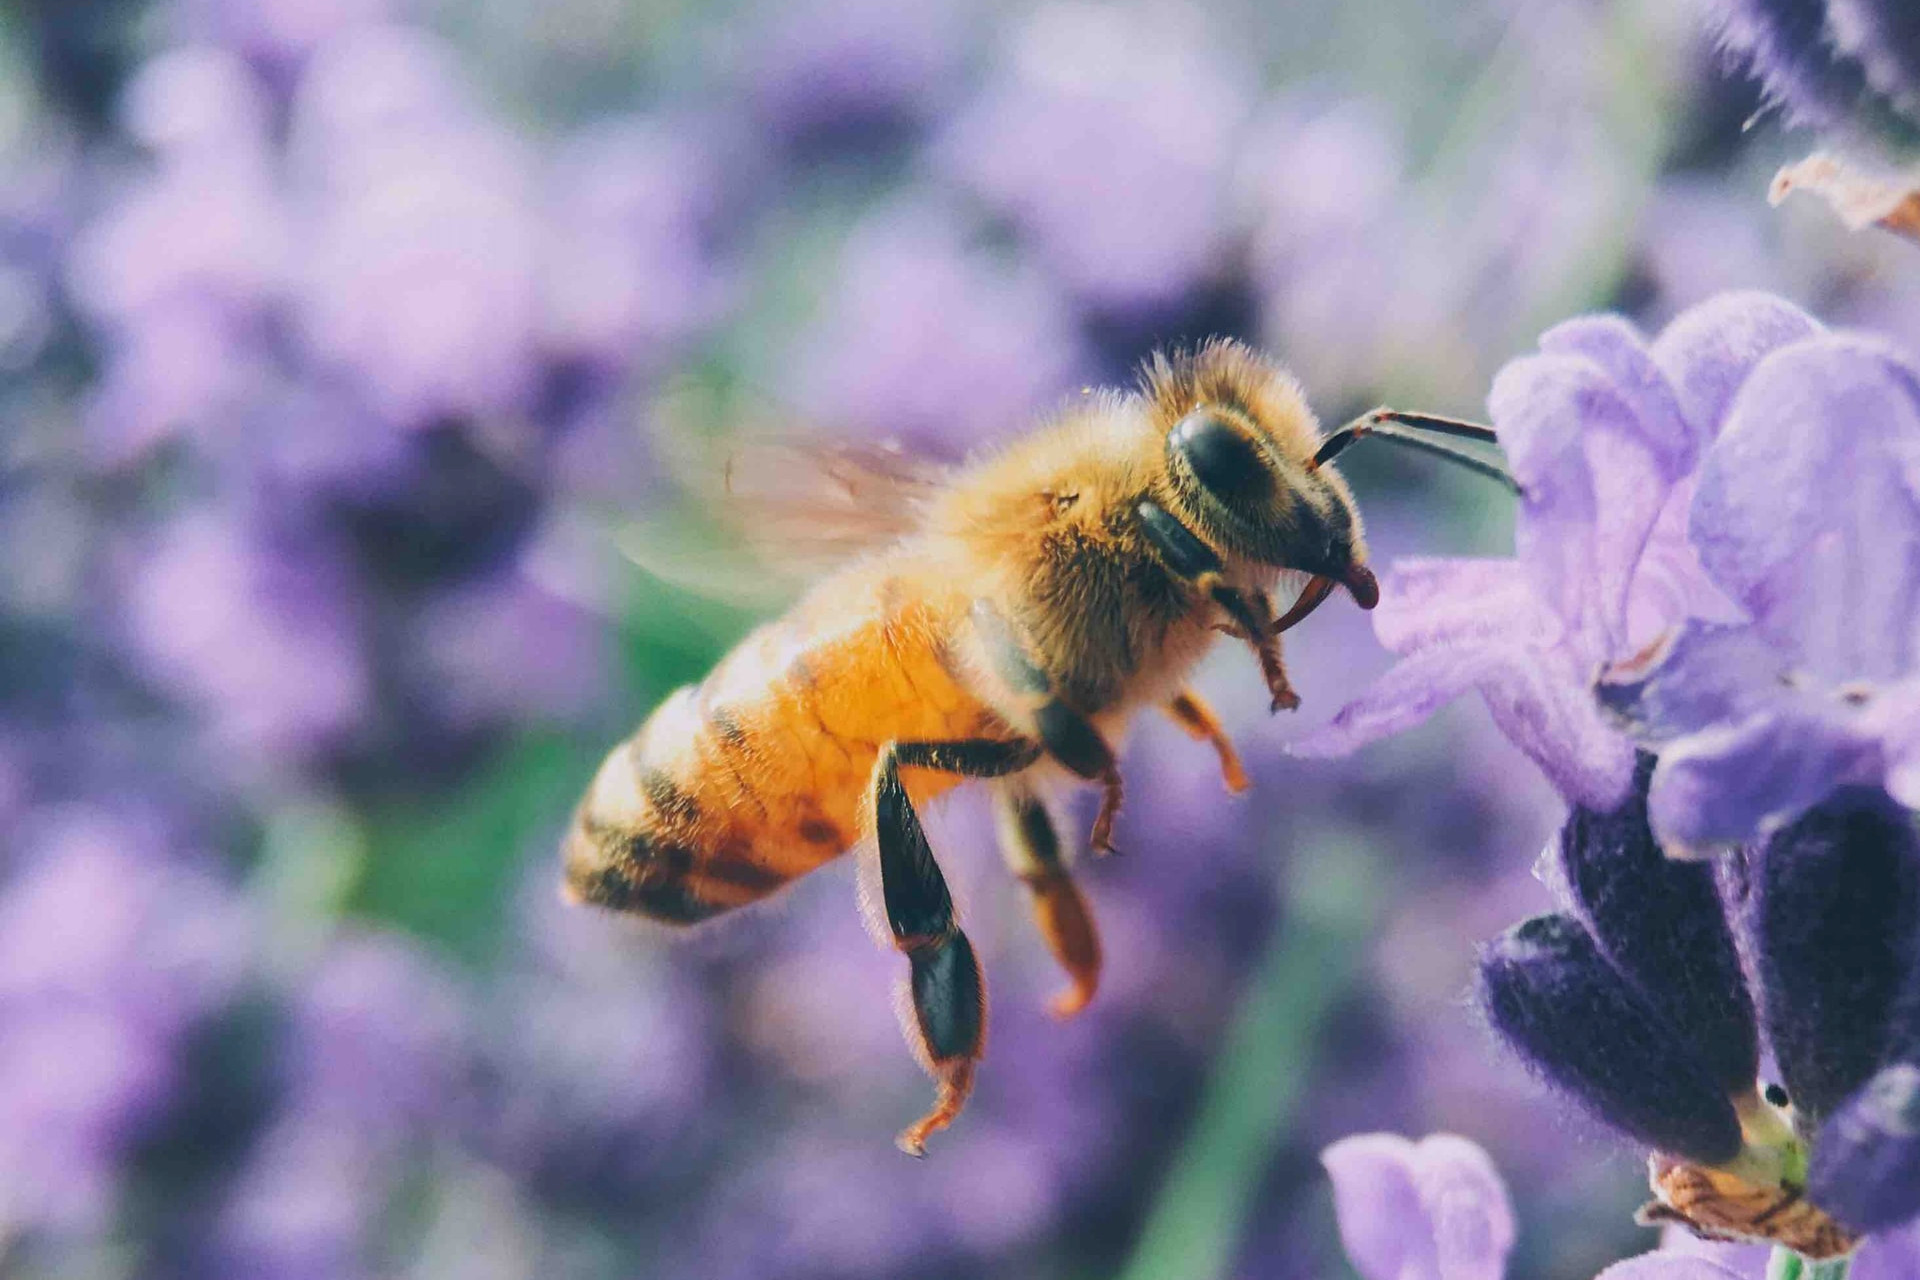 Bee by Aaron Burden on Unsplash